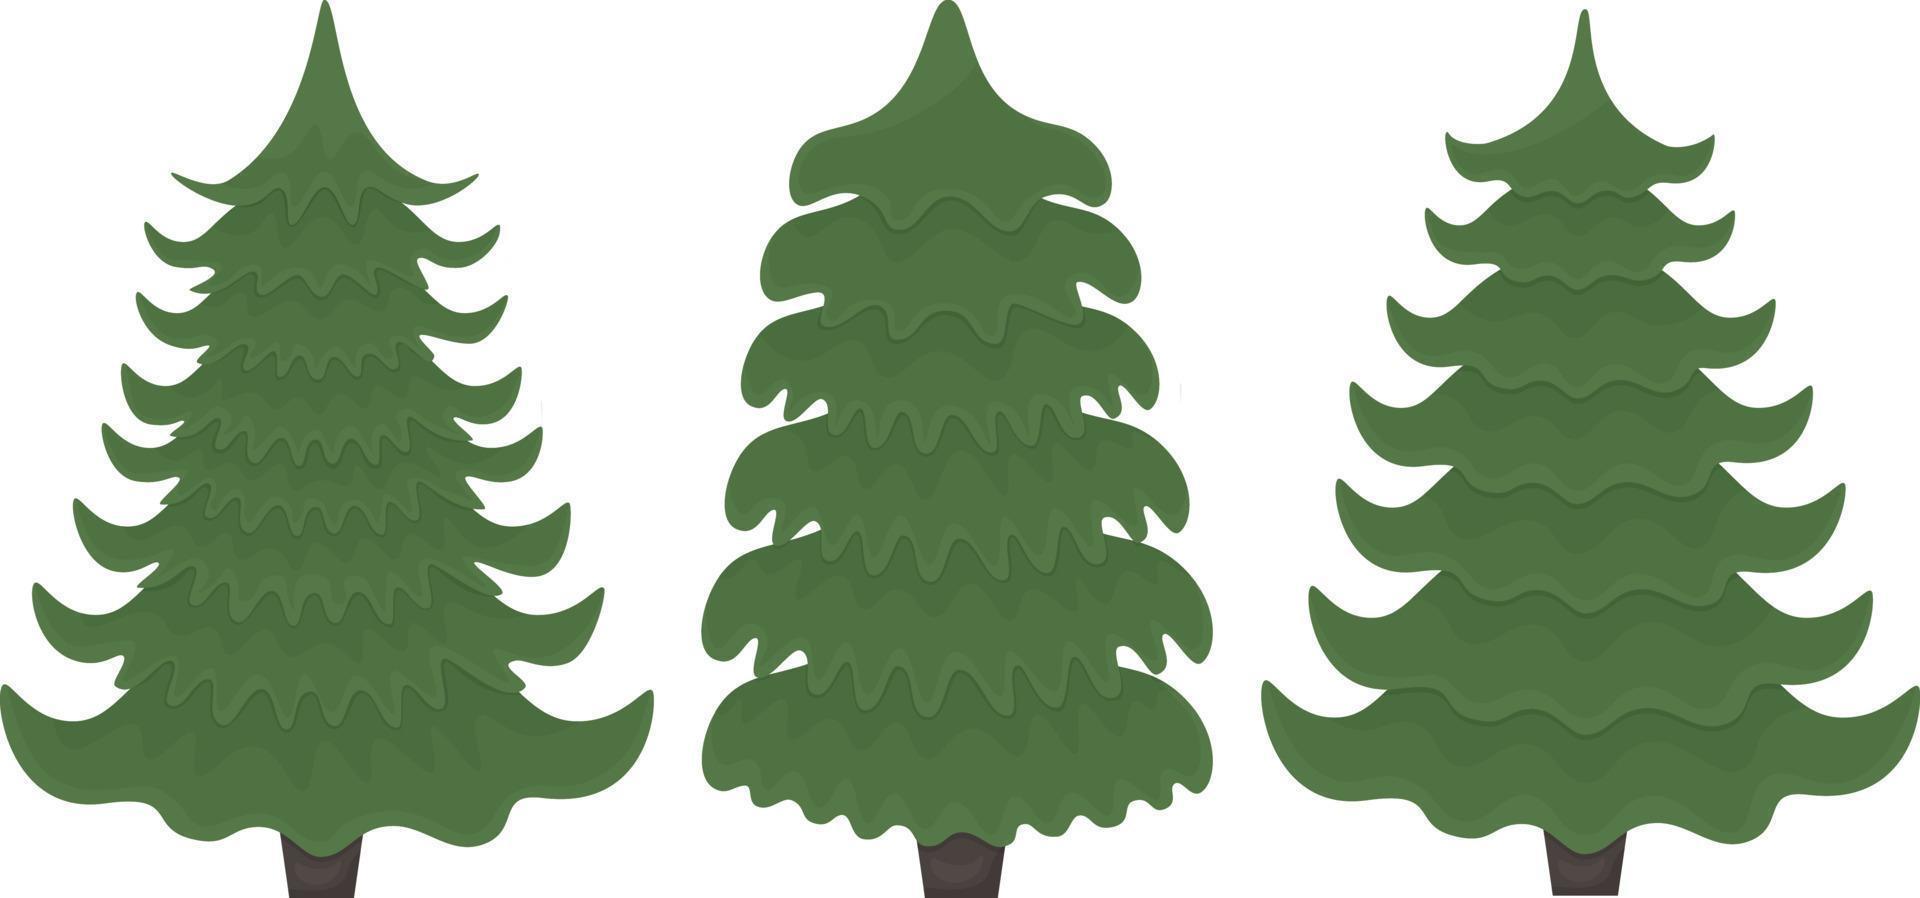 Weihnachtsbäume. ein satz von drei weihnachtsbäumen in verschiedenen formen. grüne Tannen. drei Pinien-Vektor-Illustration auf weißem Hintergrund vektor